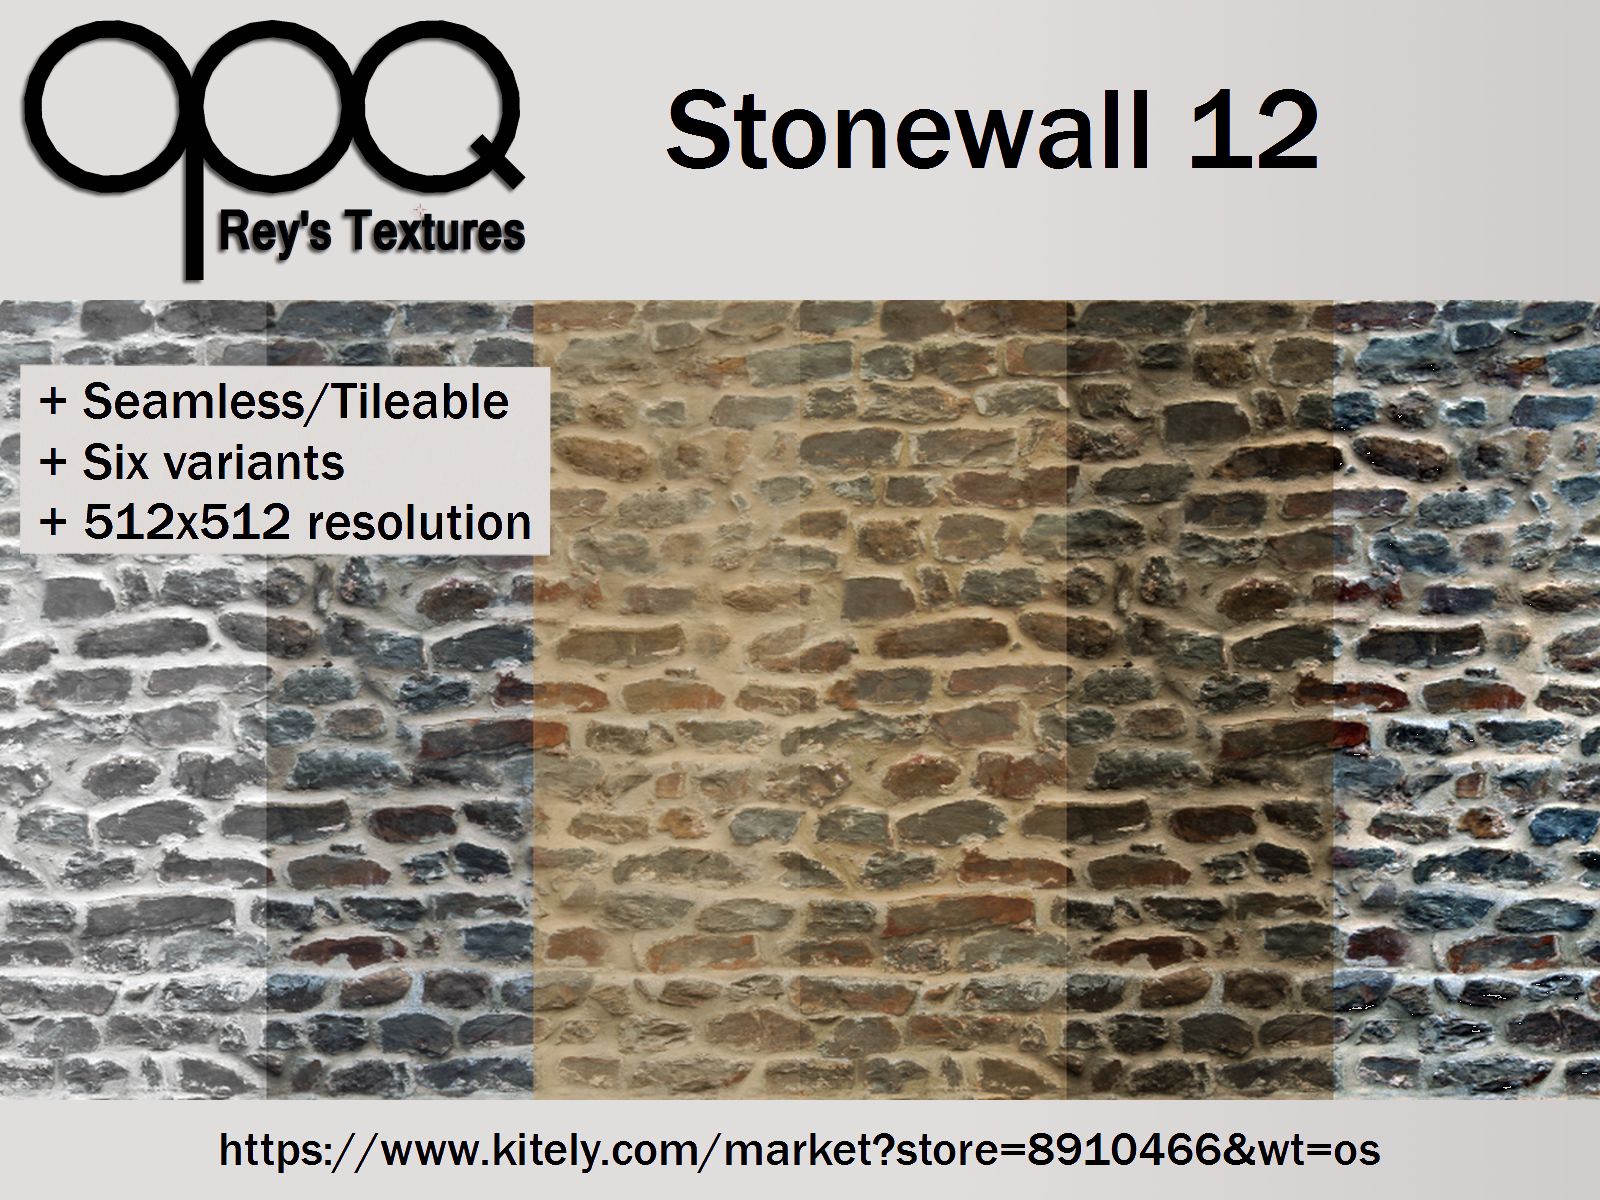 Rey's Stonewall 12 Poster Kitely.jpg